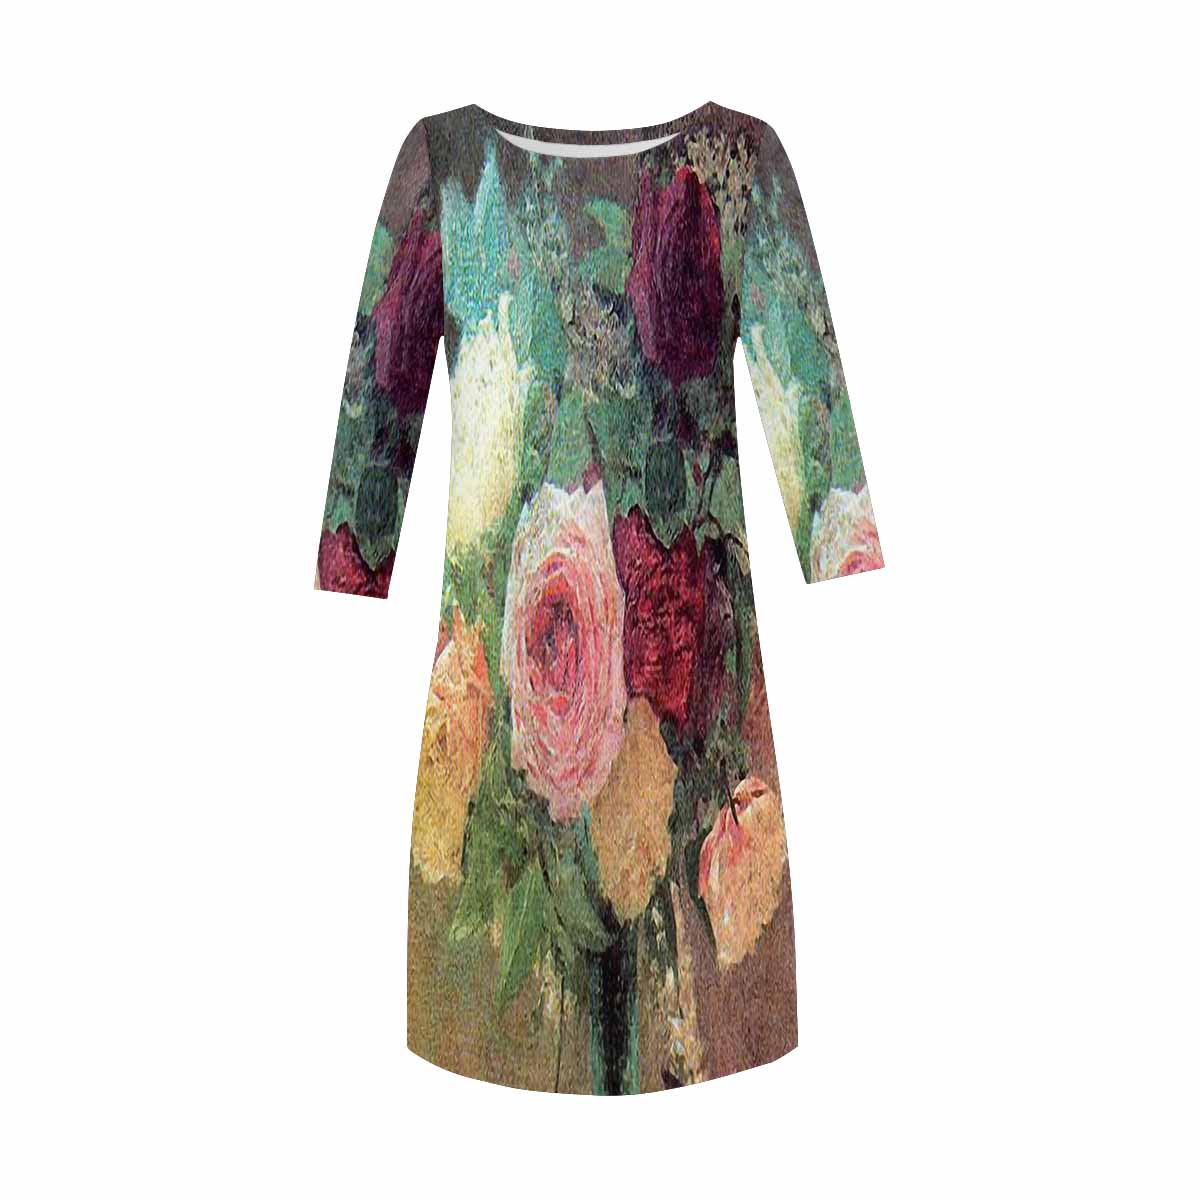 Vintage floral loose dress, model D29532 Design 29